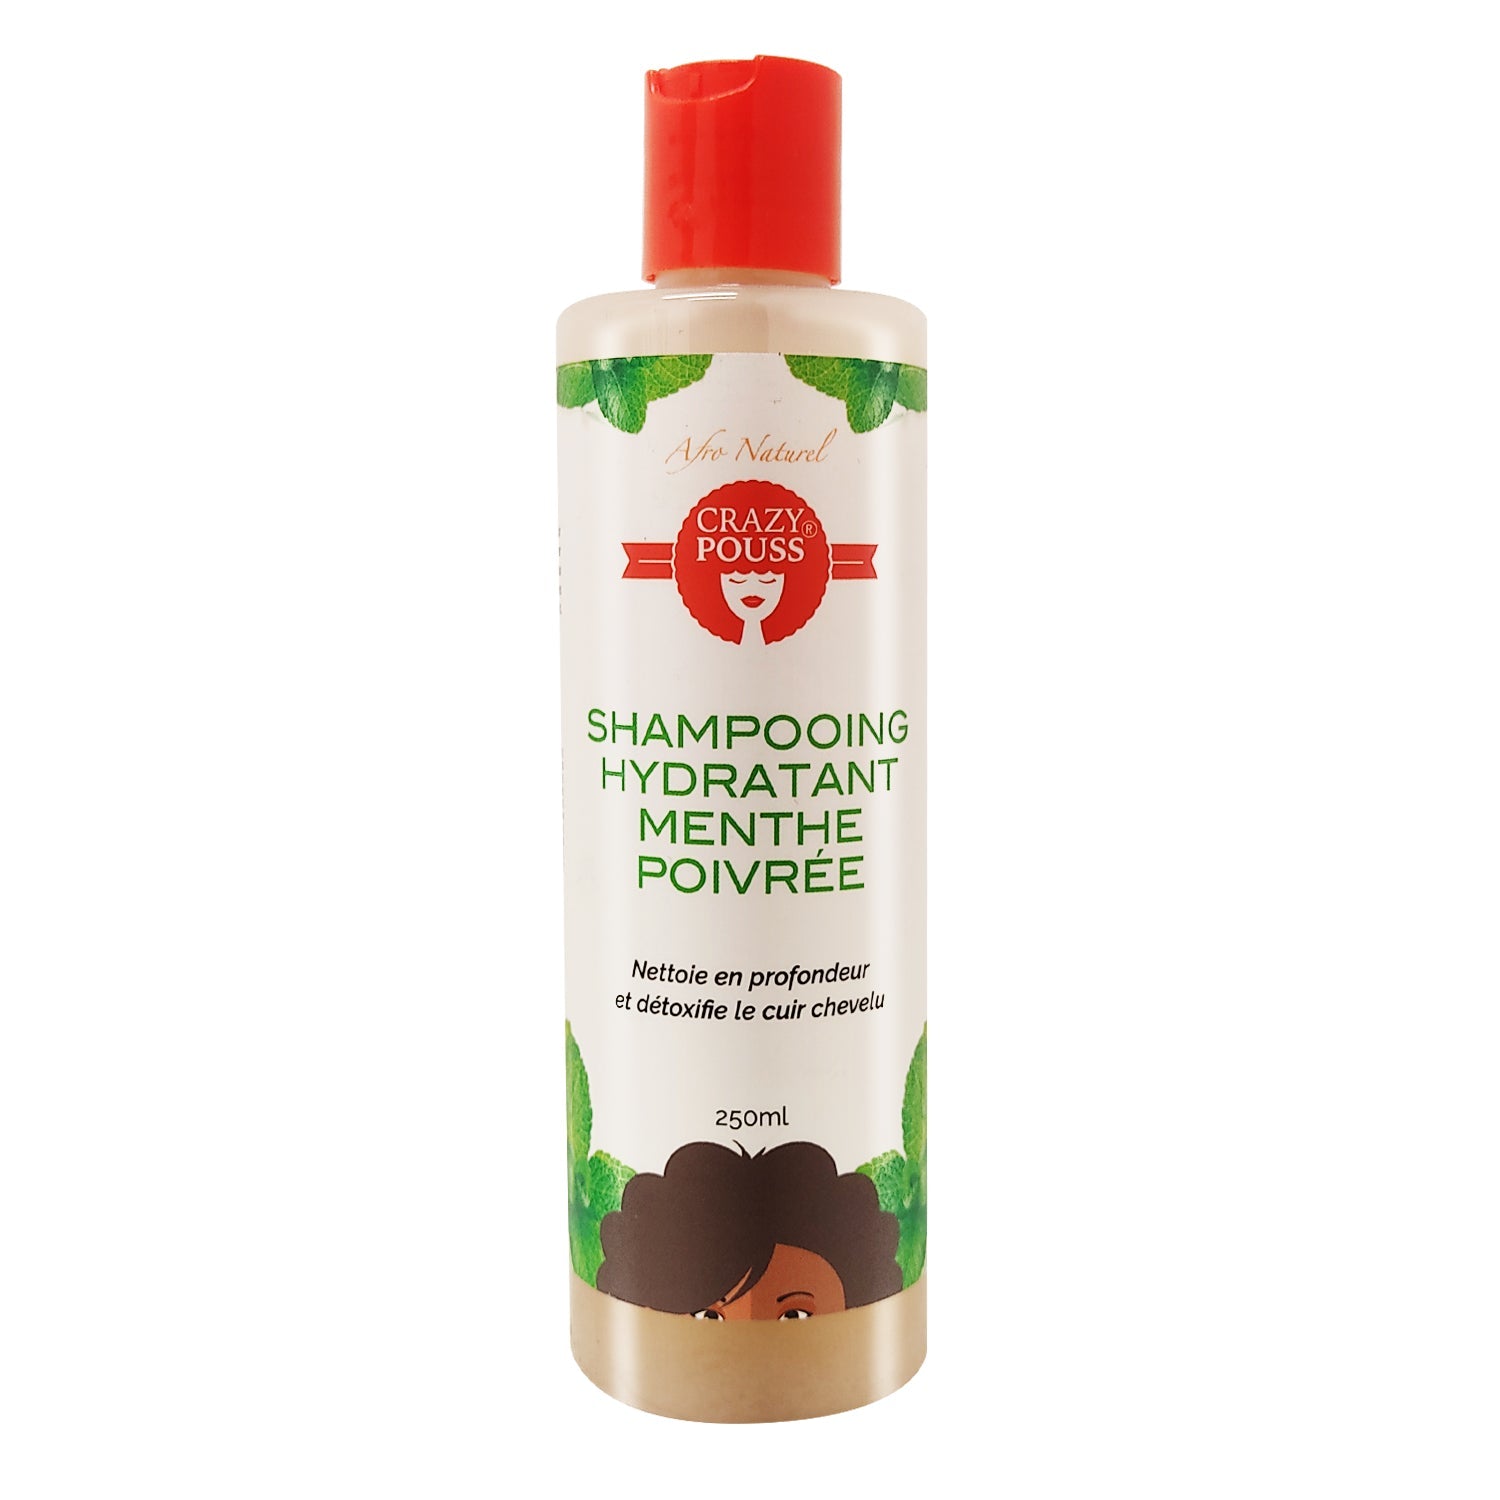 CRAZY POUSS - Shampooing hydratant à la menthe poivrée - Soin capillaire pour nettoyer et hydrater en profondeur vos cheveux crépus ou ondulés